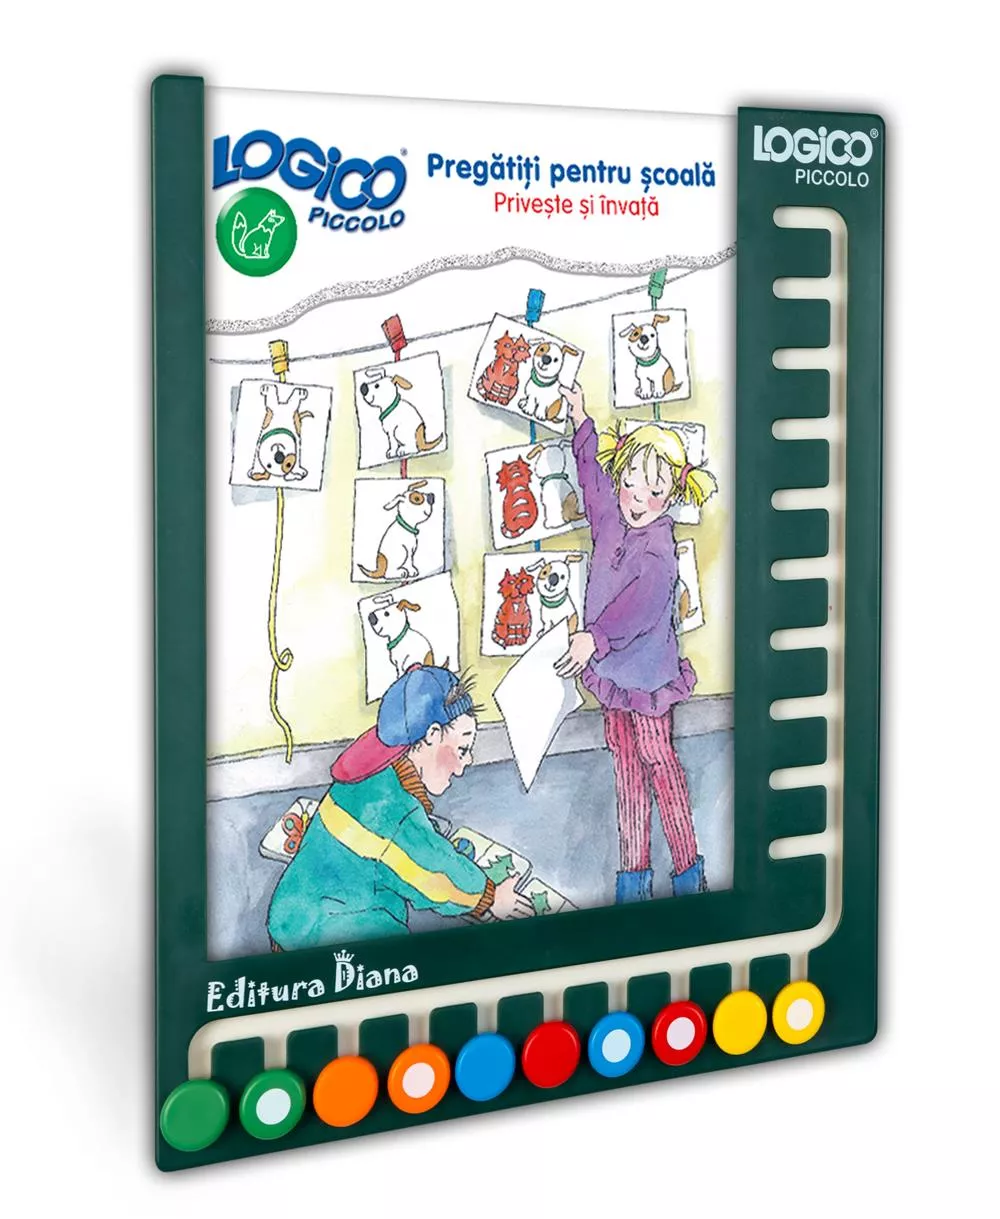 LOGICO PICCOLO - SET CU RAMĂ -Pregătiți pentru școală - Privește și învață (5+)